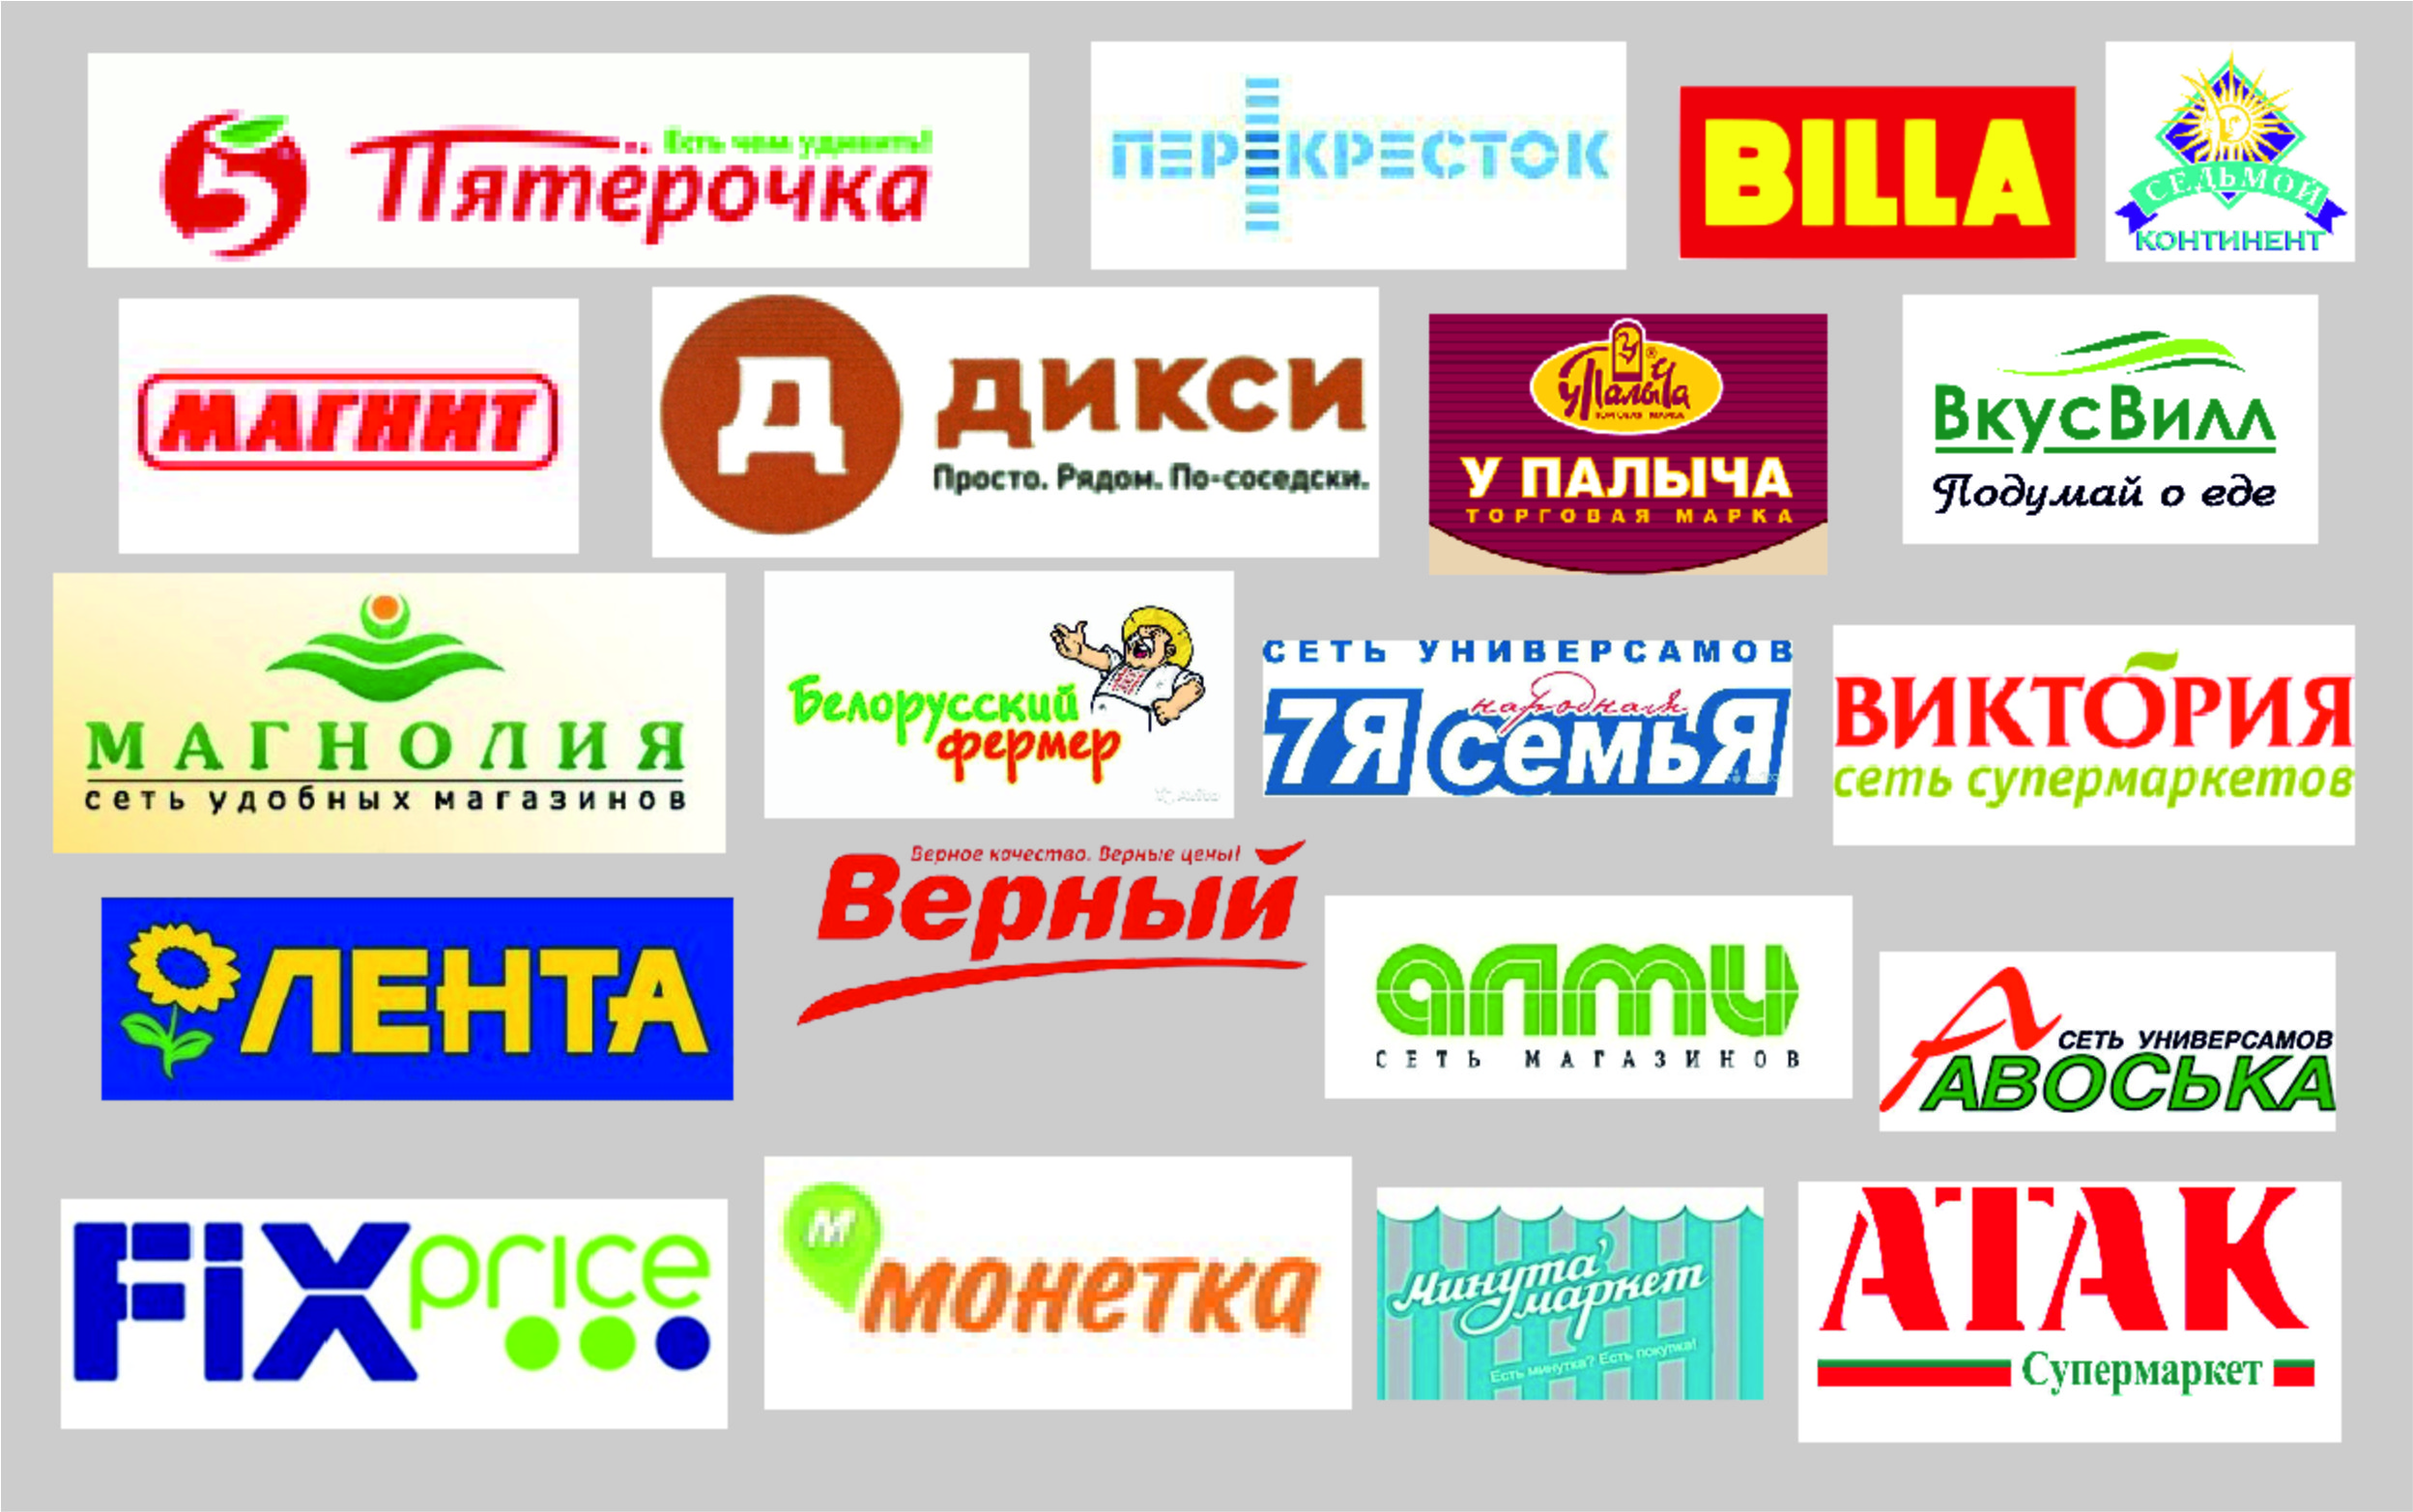 Магазины Покупай В Москве